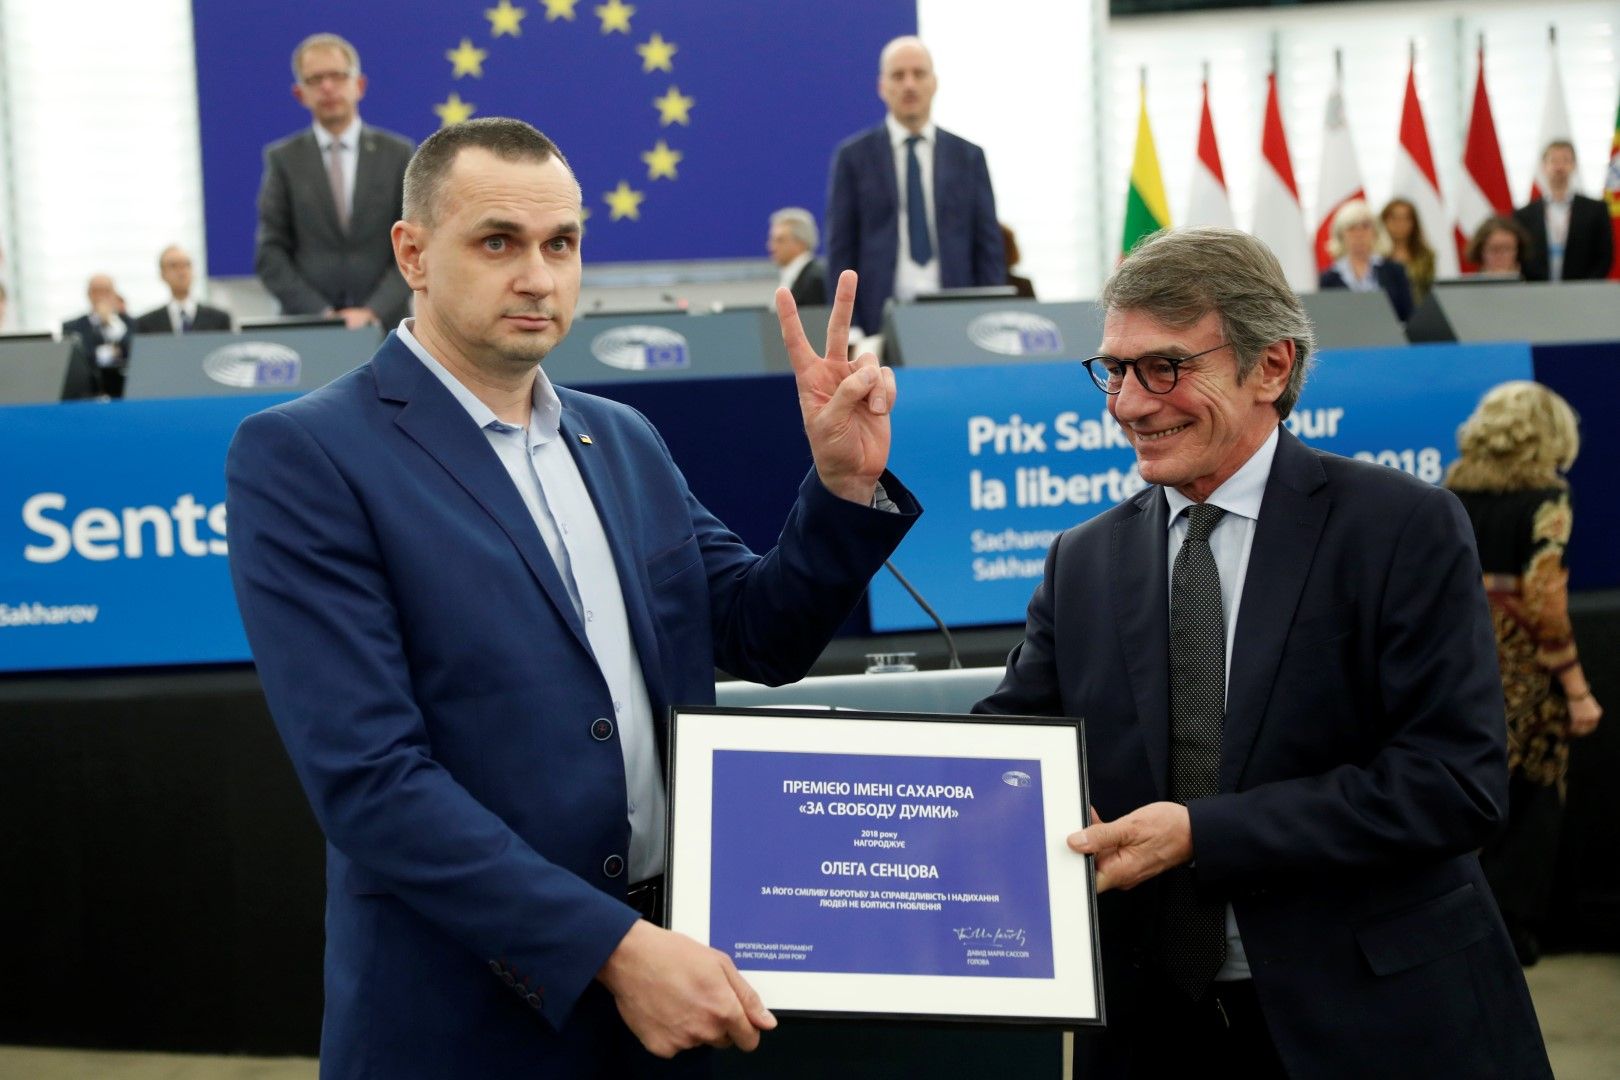 Олег Сенцов получава наградата от Давид Сасоли и изобразява с ръка знака "Победа"